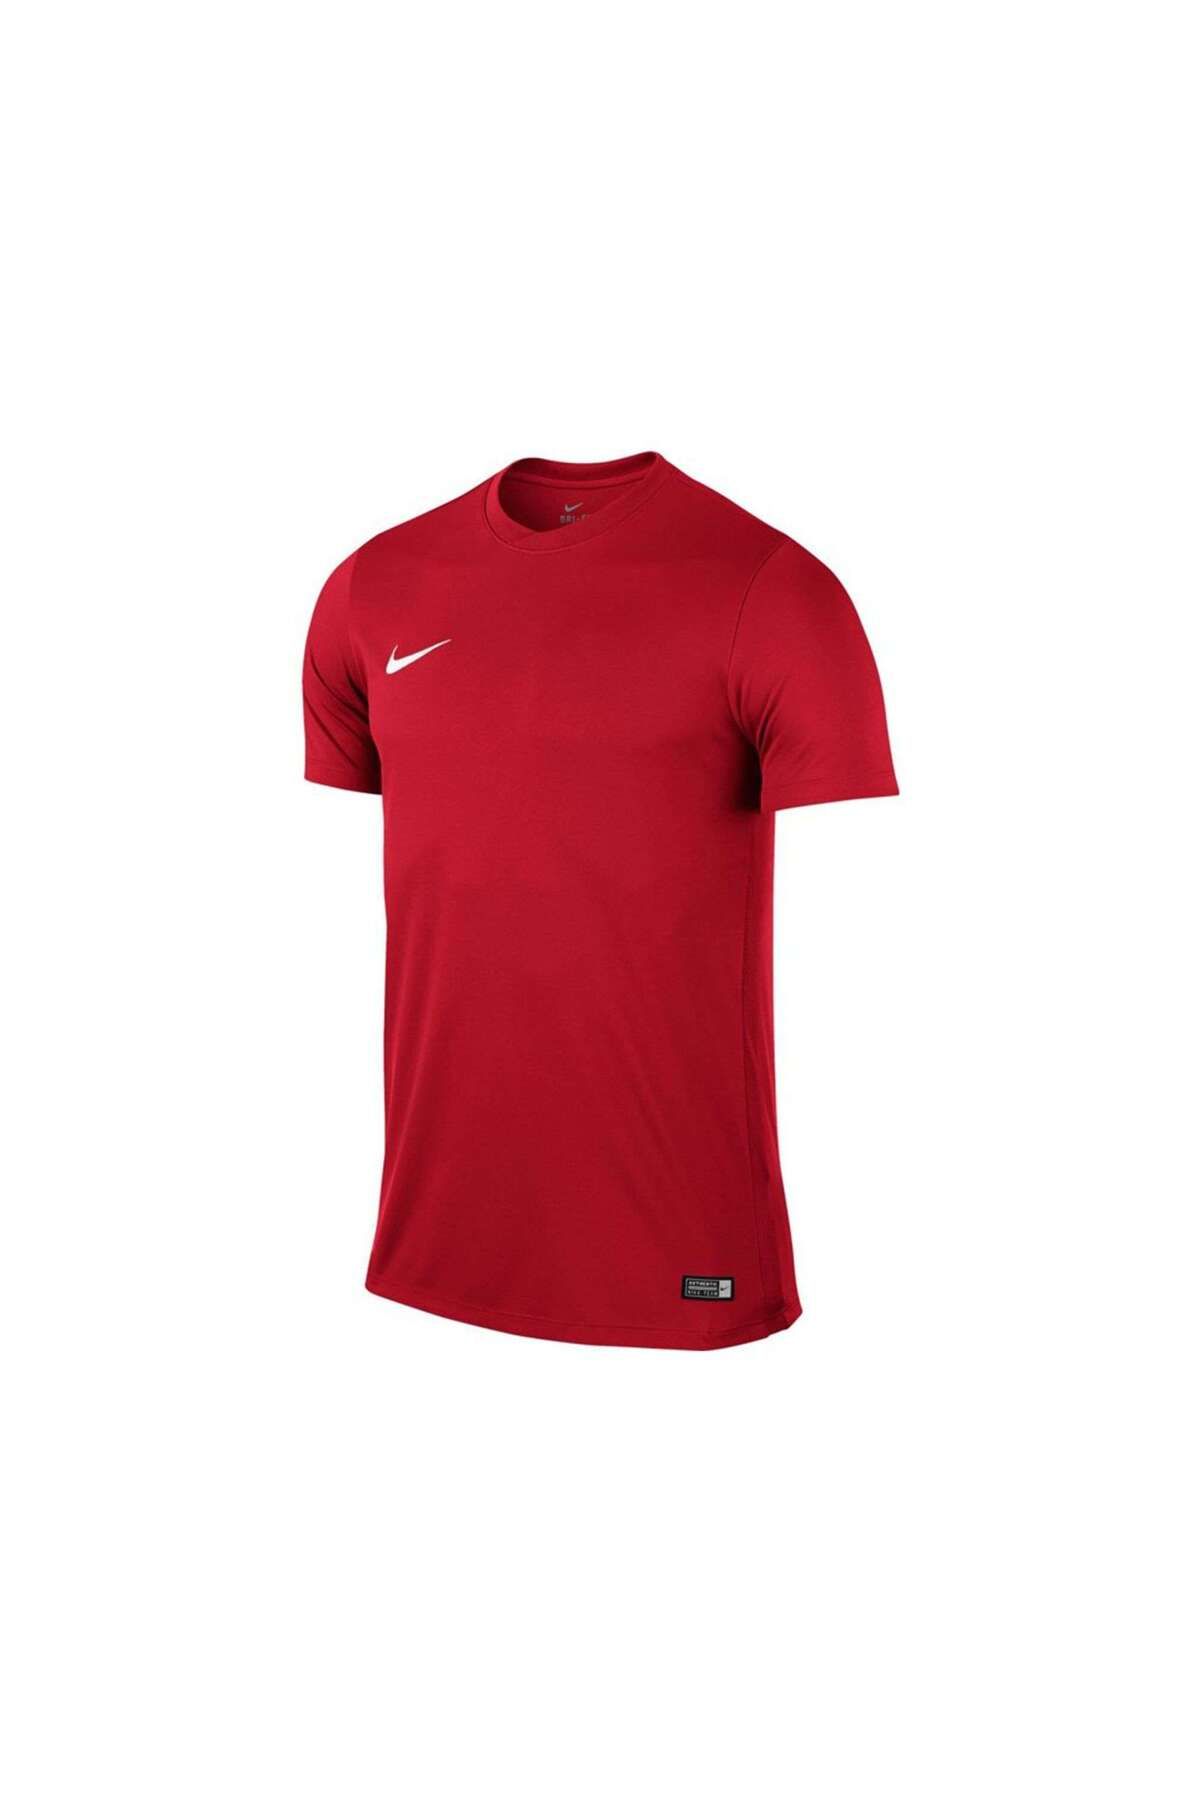 Nike 725891 Ss Park Vı Jsy T-shirt Kırmızı